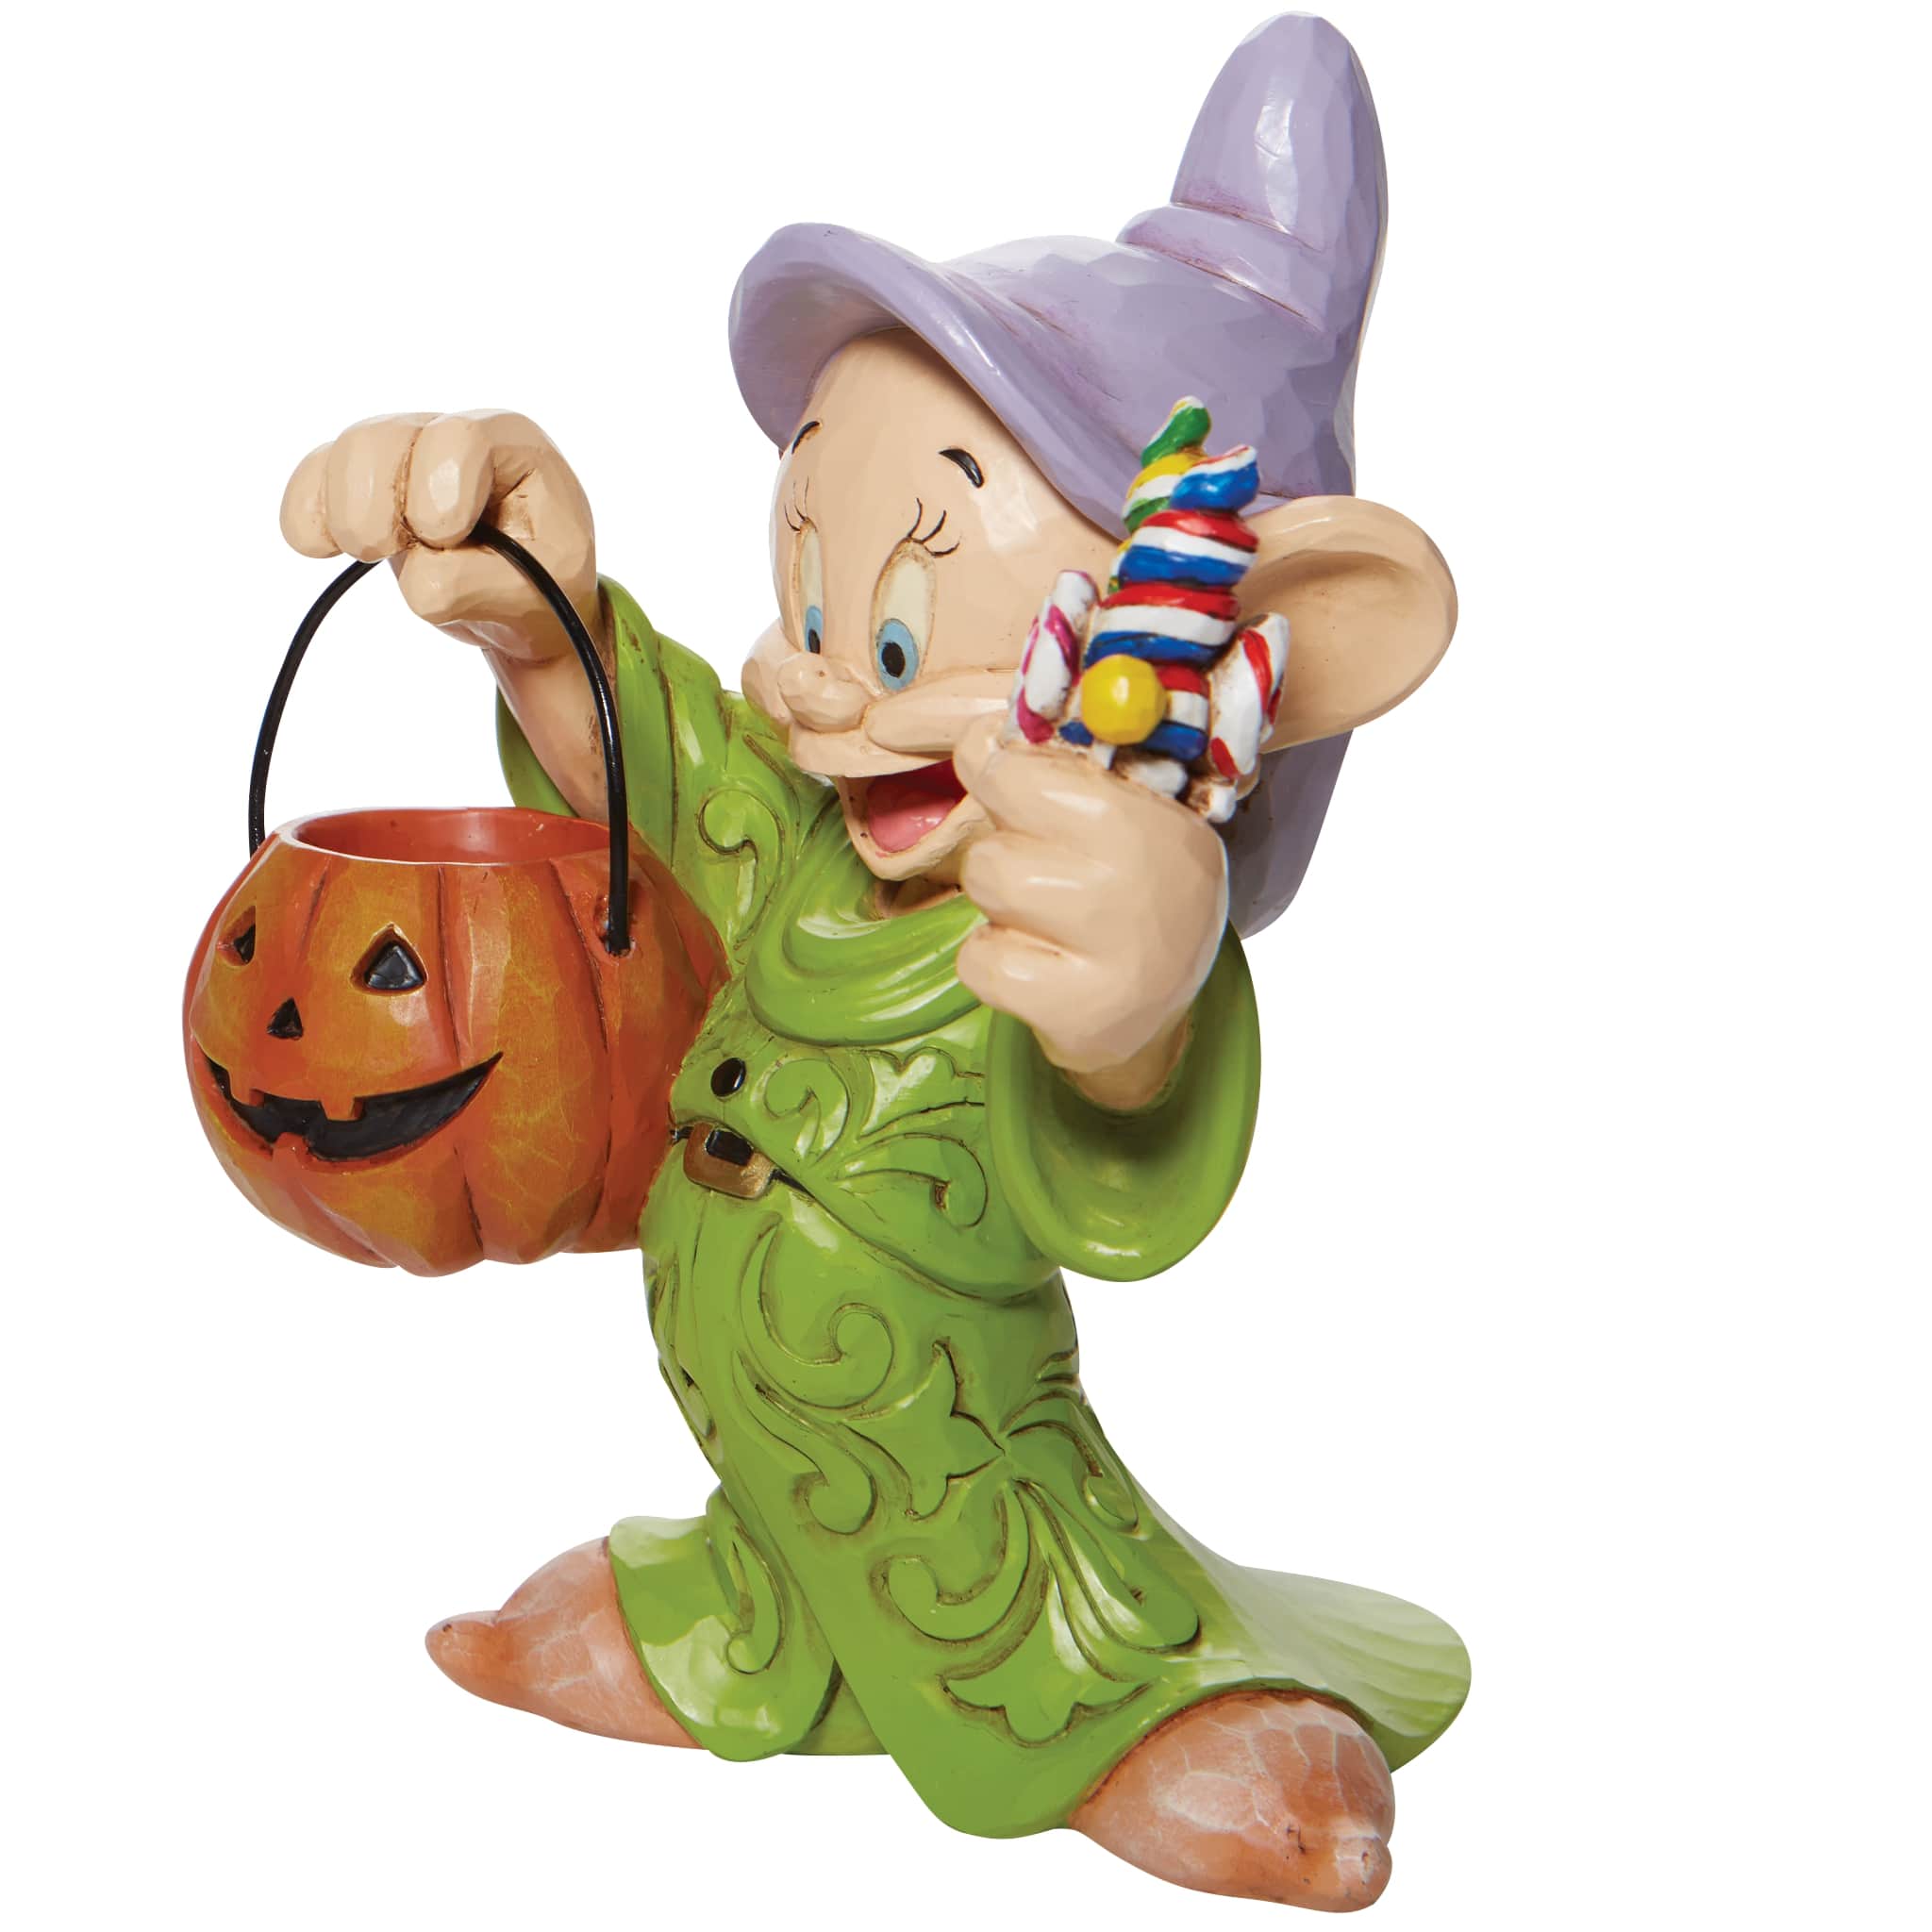 Sammelfigur Disney 7 Zwerge Dopey Trick-or-Treating  Cheerful Candy Collector Halloween